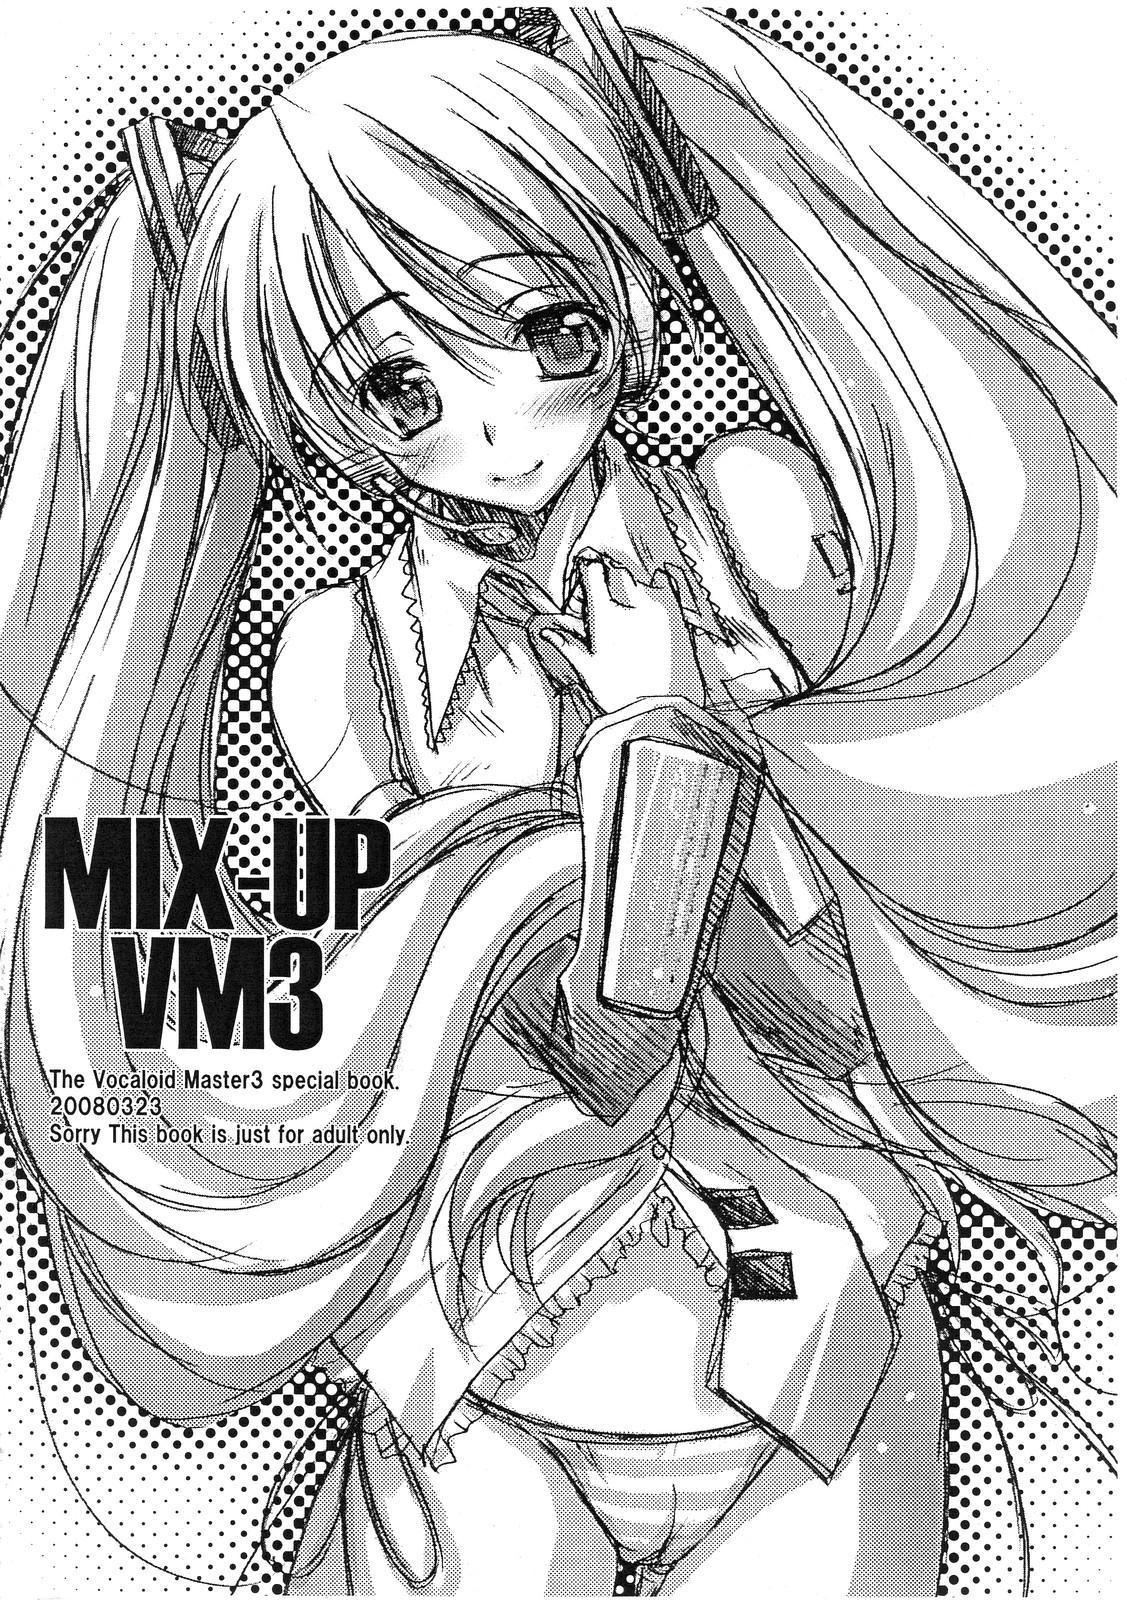 MIX-UP VM3 0